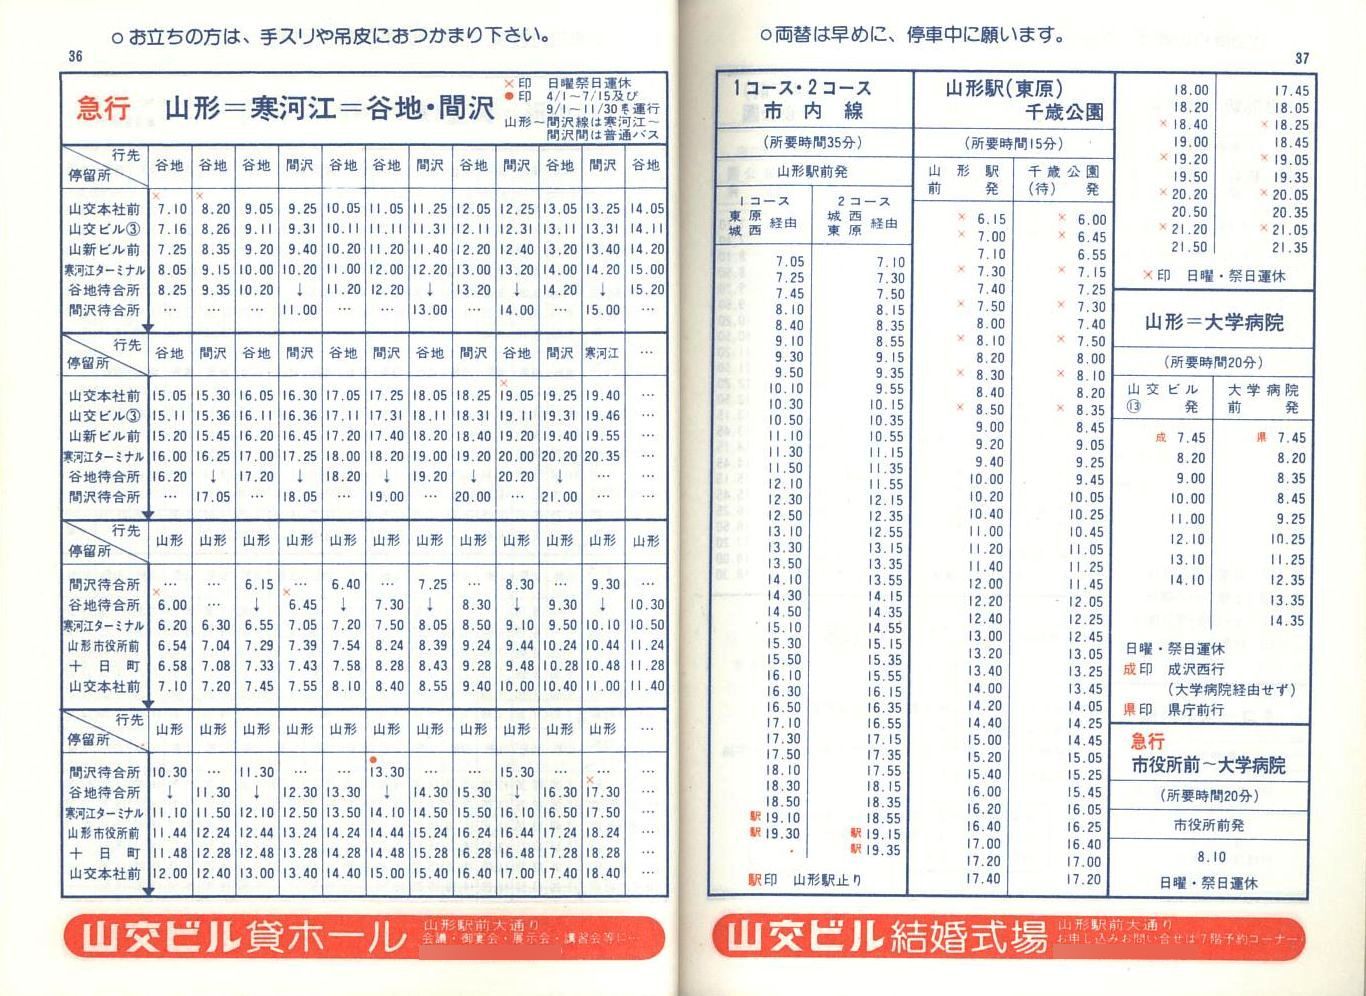 1978-04-01改正_山形交通_冊子時刻表_36-37